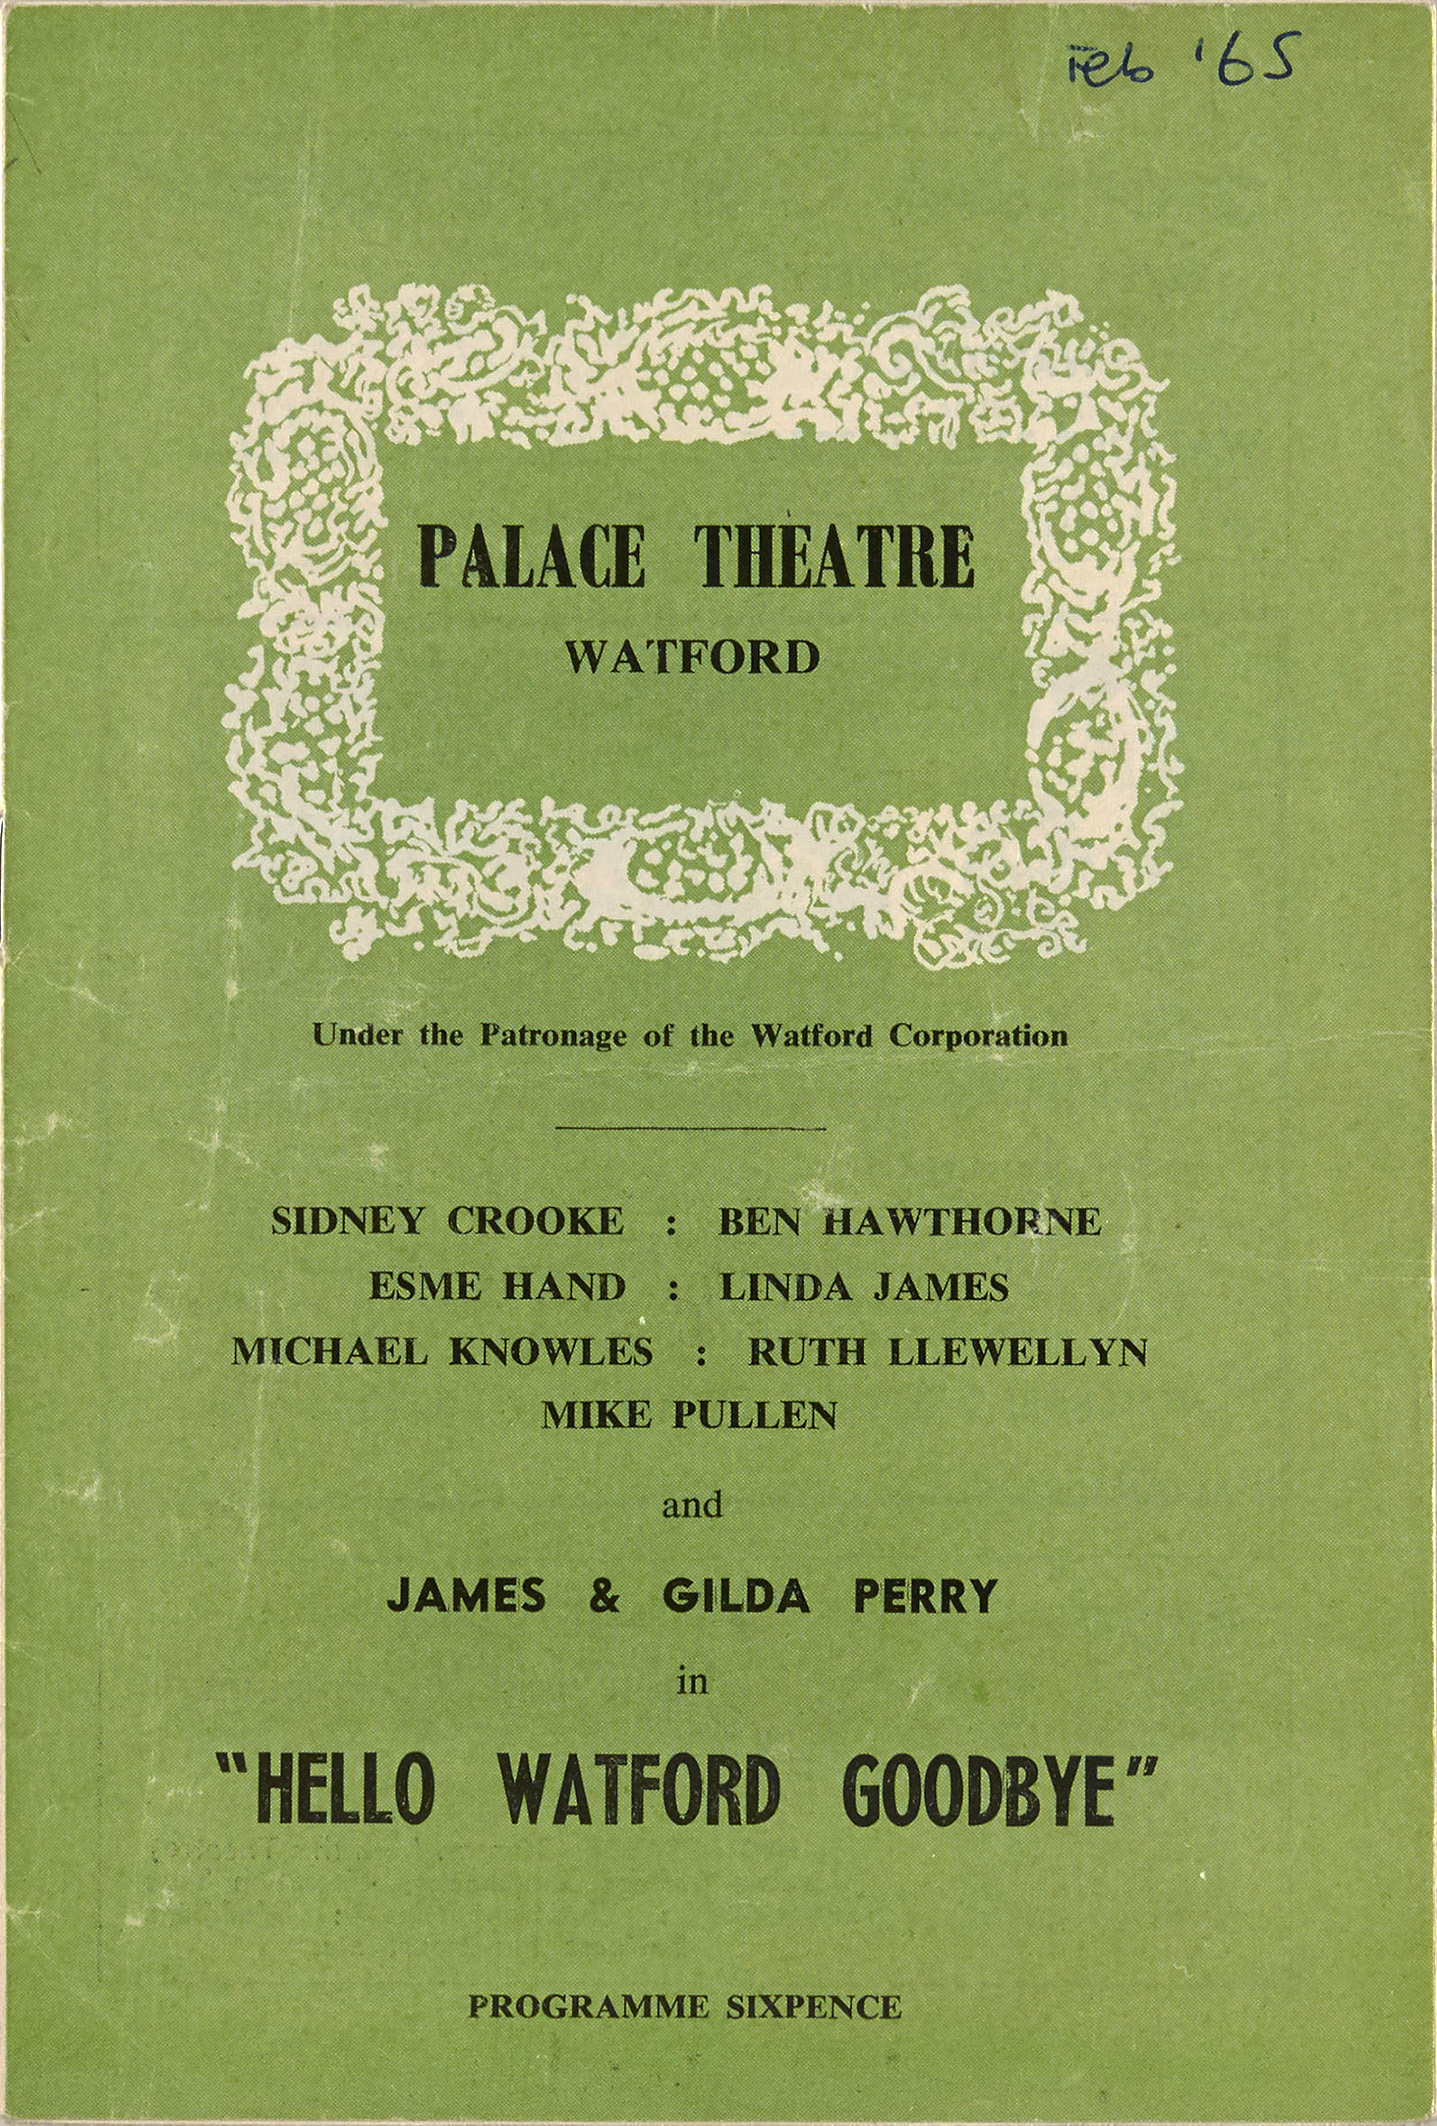 1960s programme